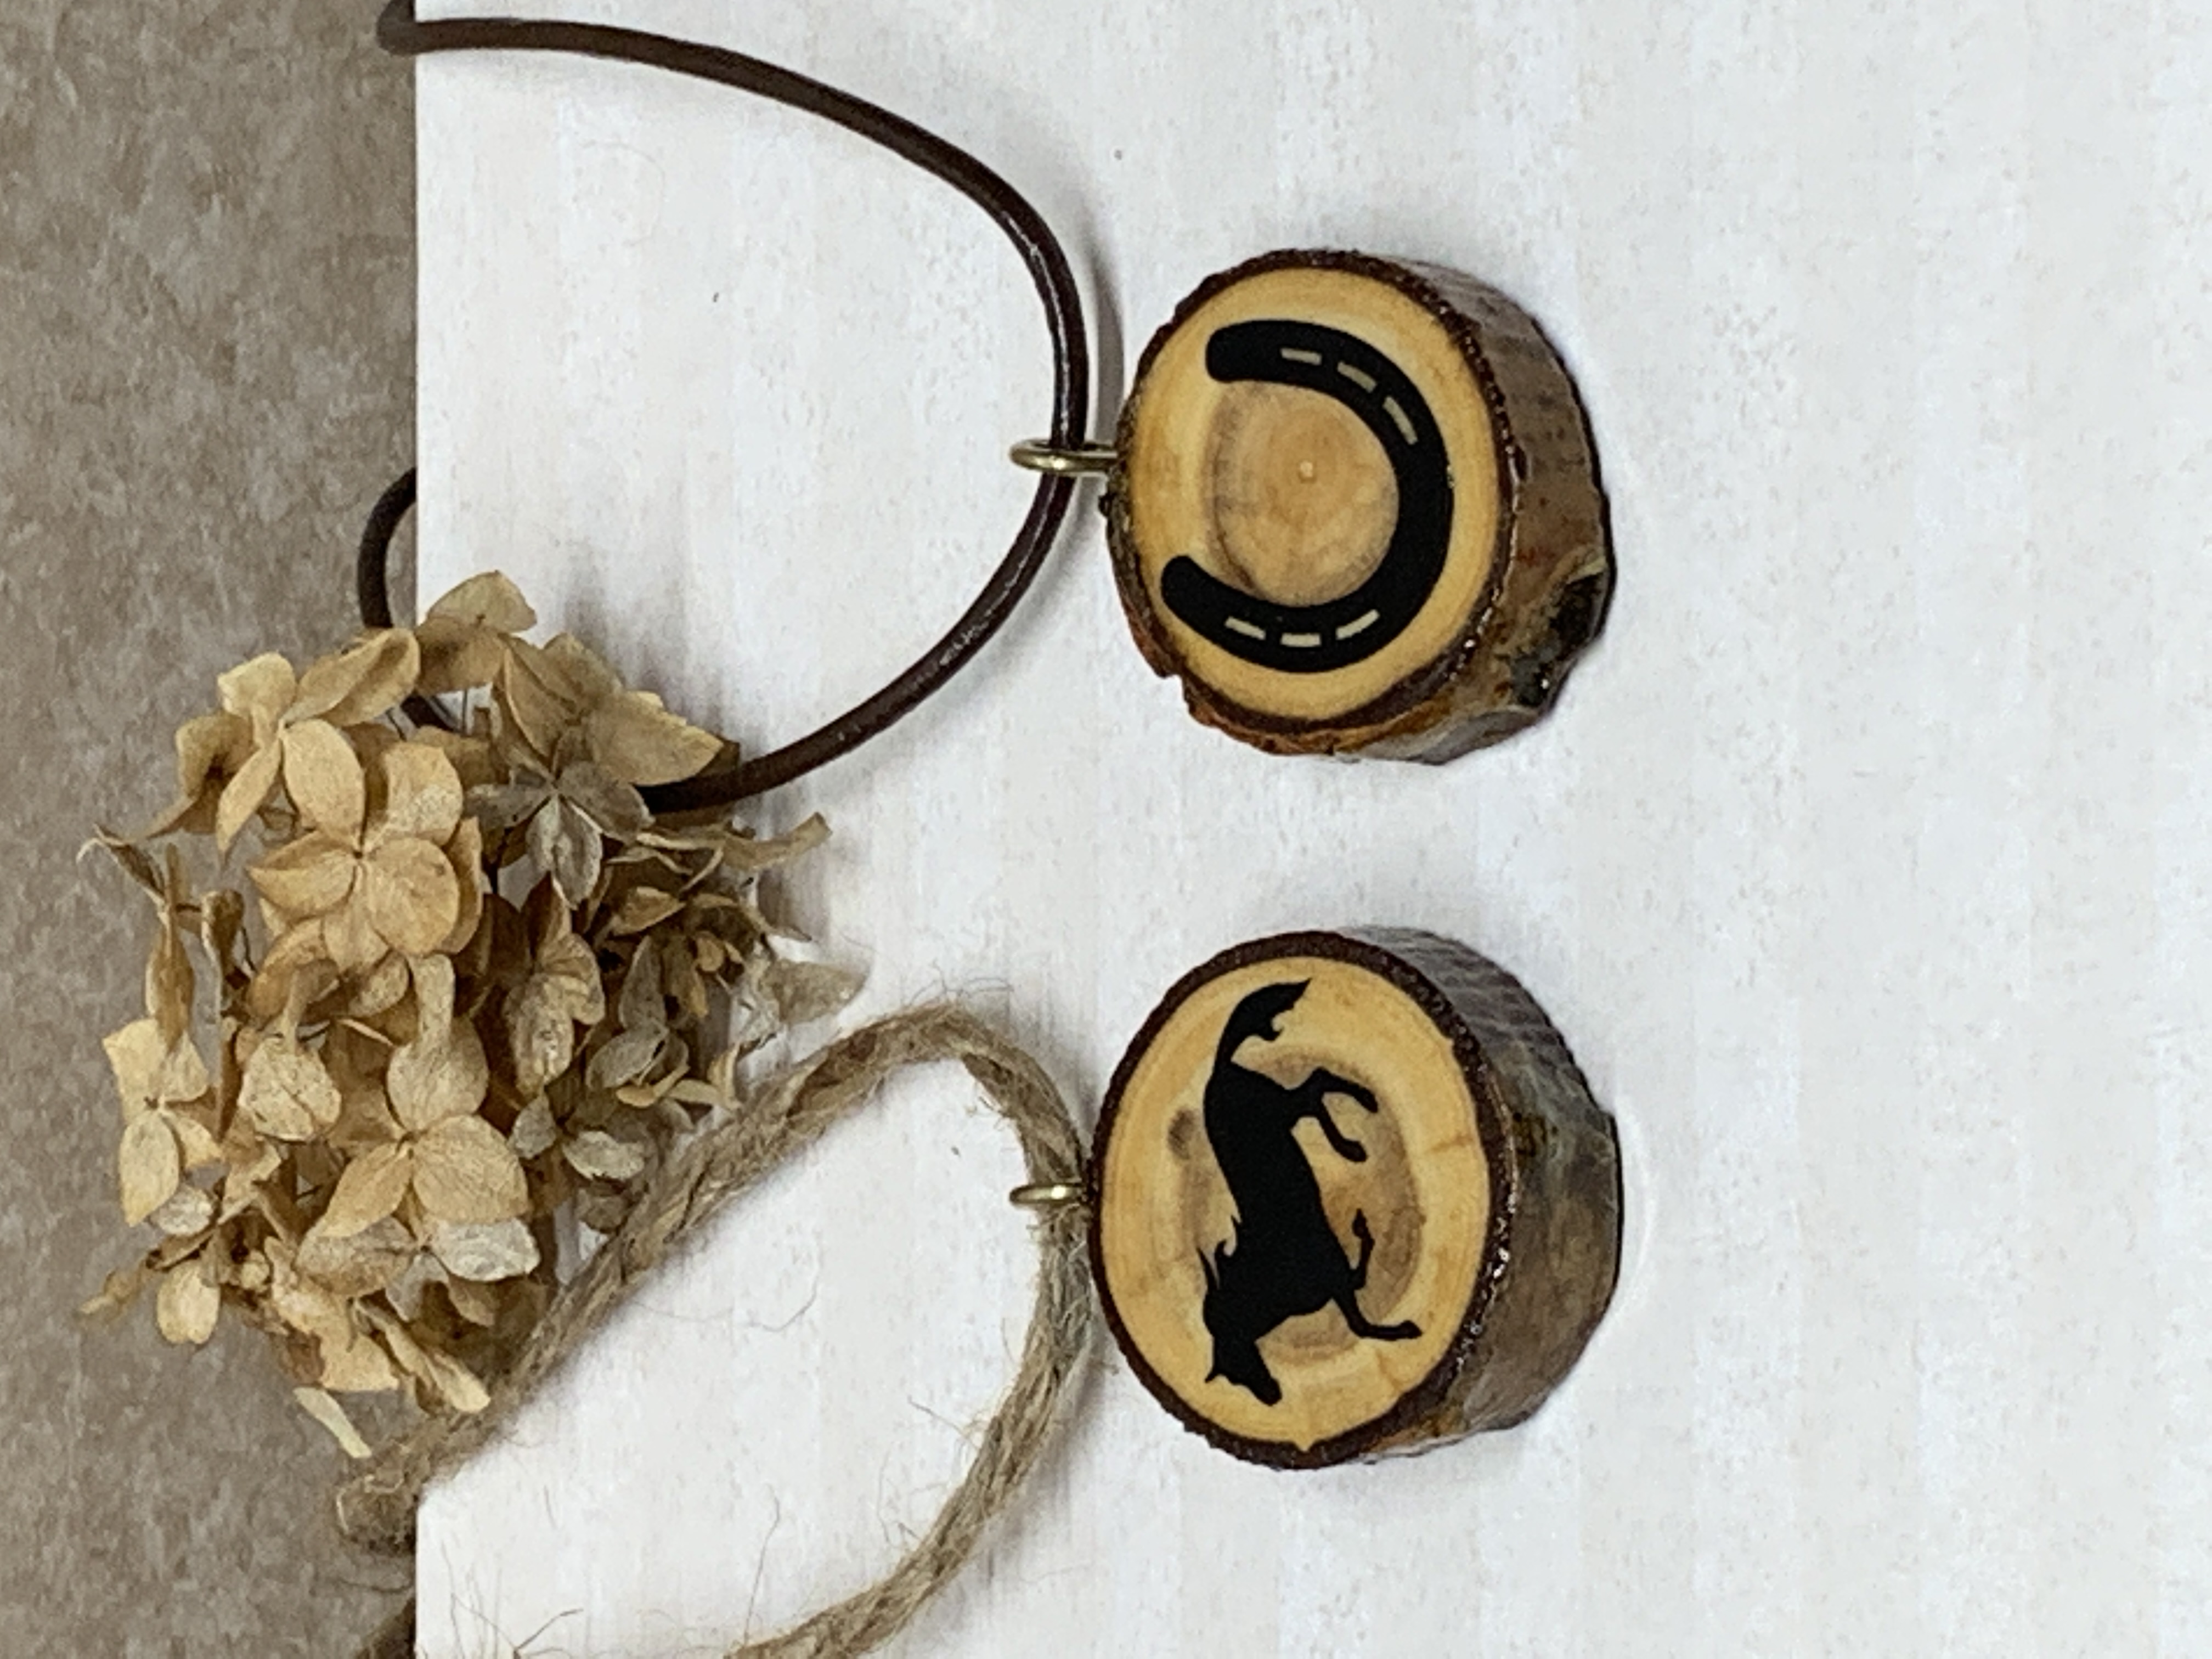 Horse / Horseshoe 2 in 1 Wood Necklace